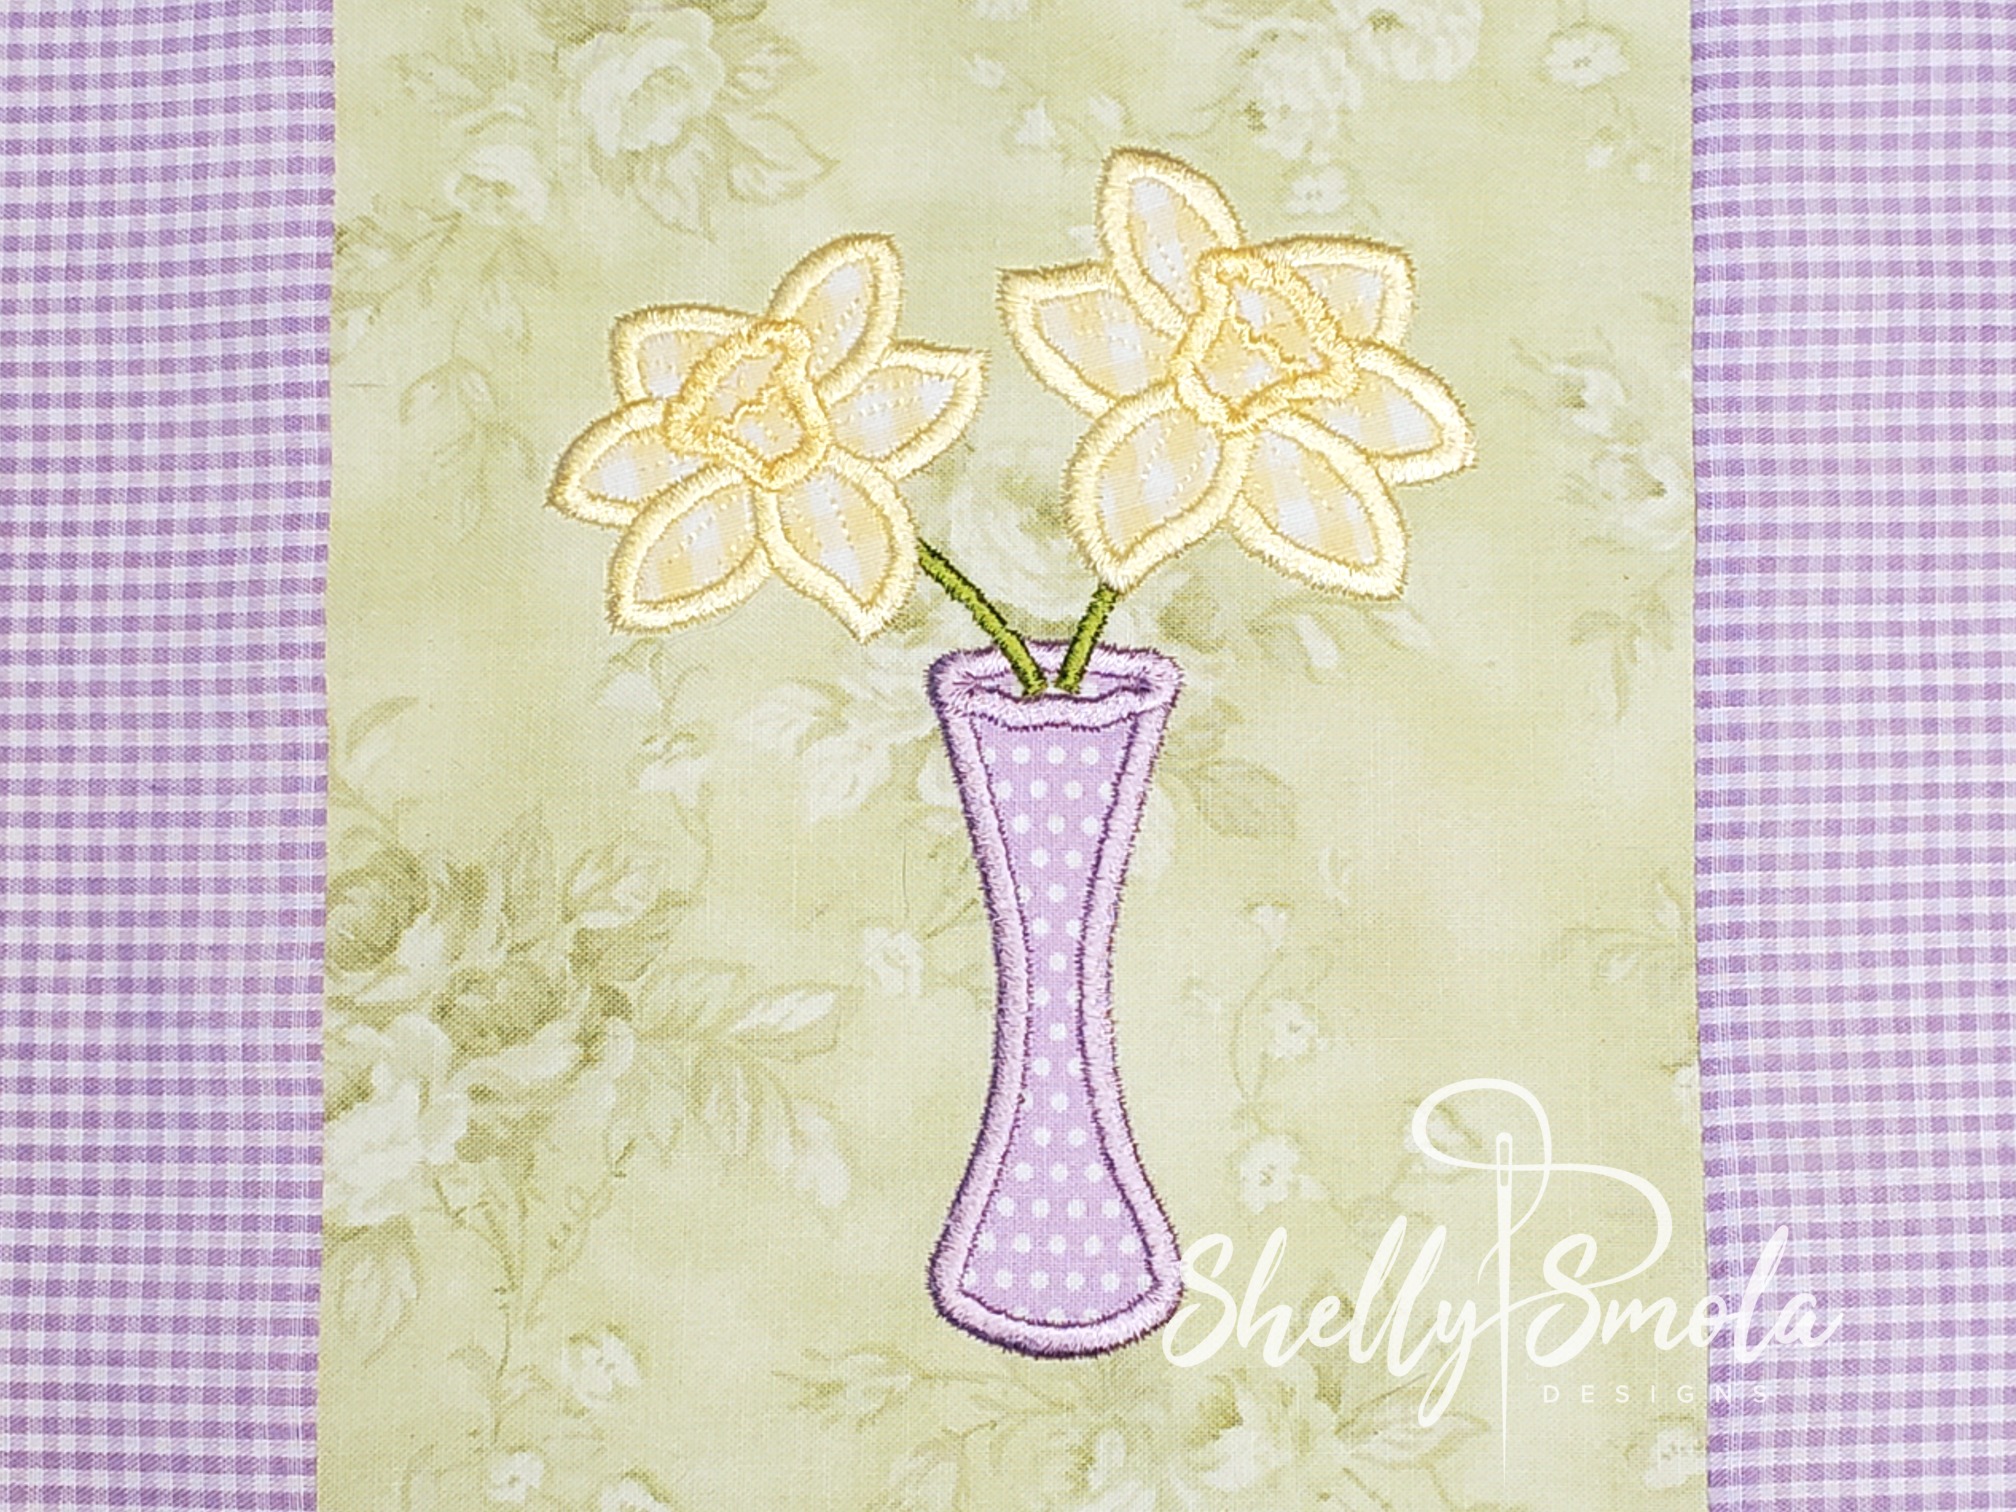 Daffodil Applique by Shelly Smola